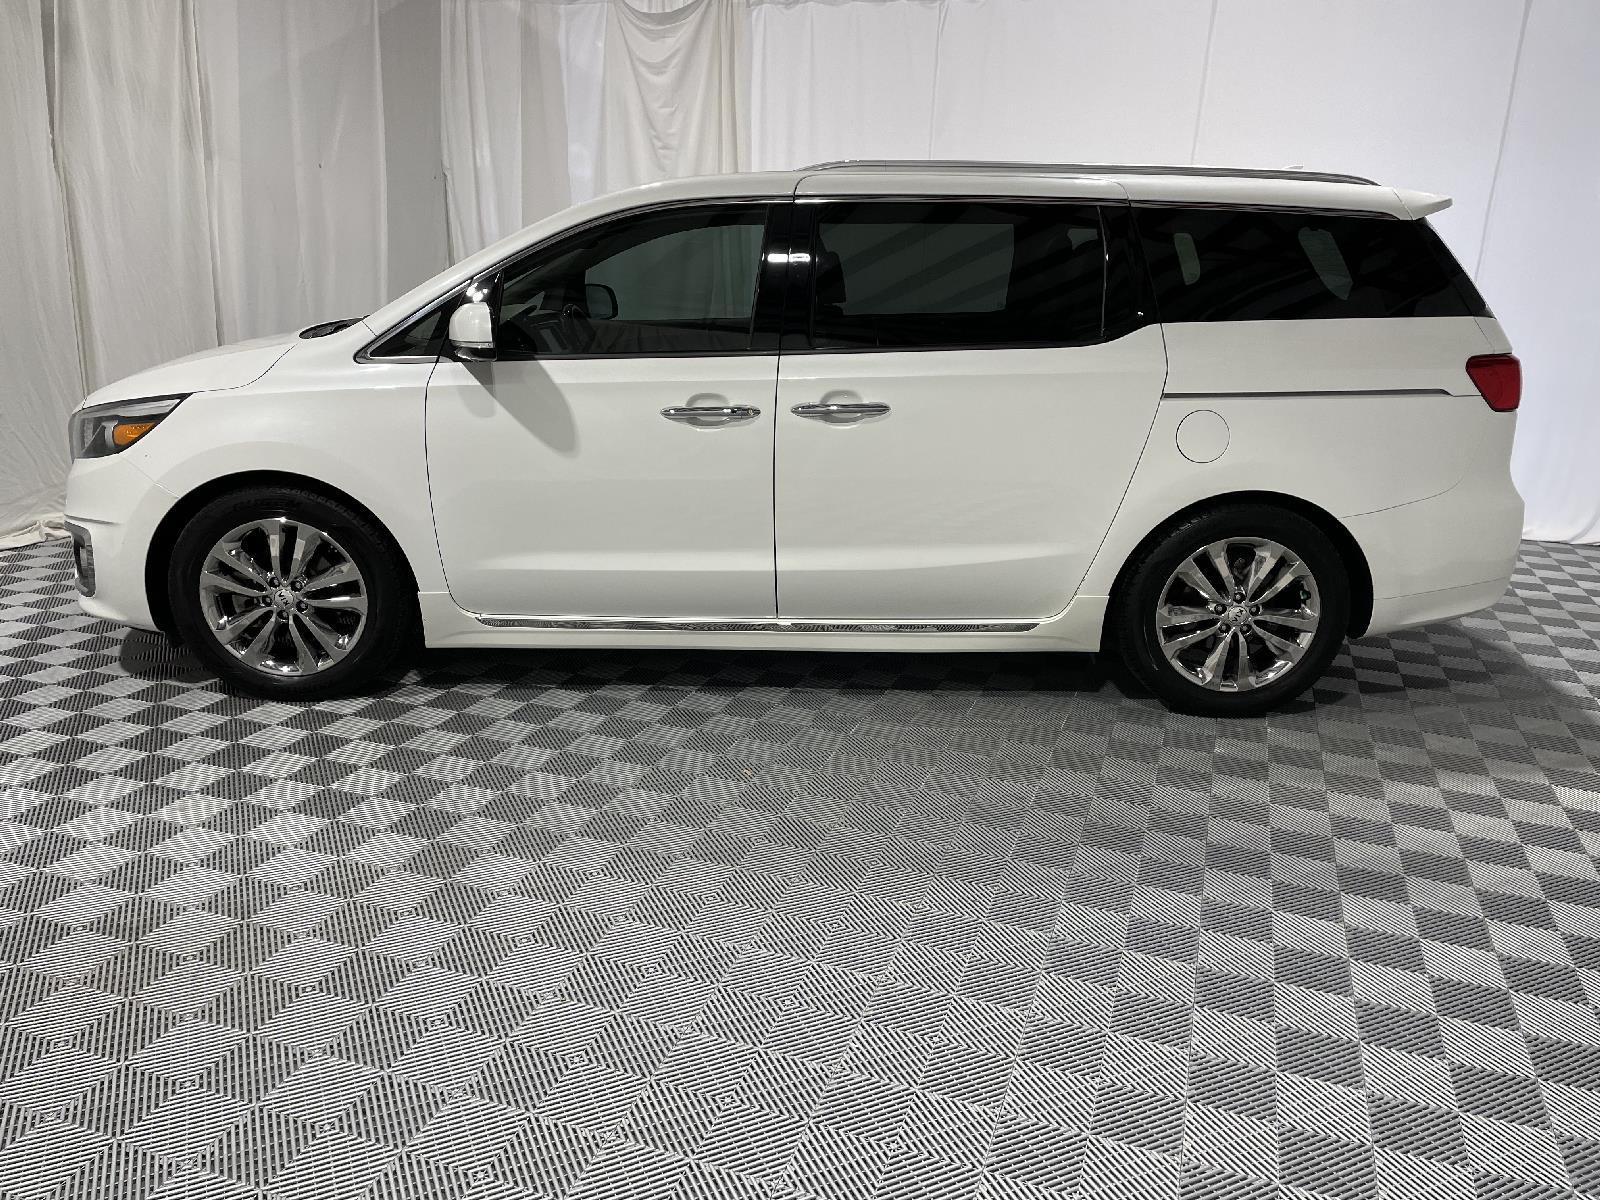 Used 2018 Kia Sedona SX-L Minivans for sale in St Joseph MO